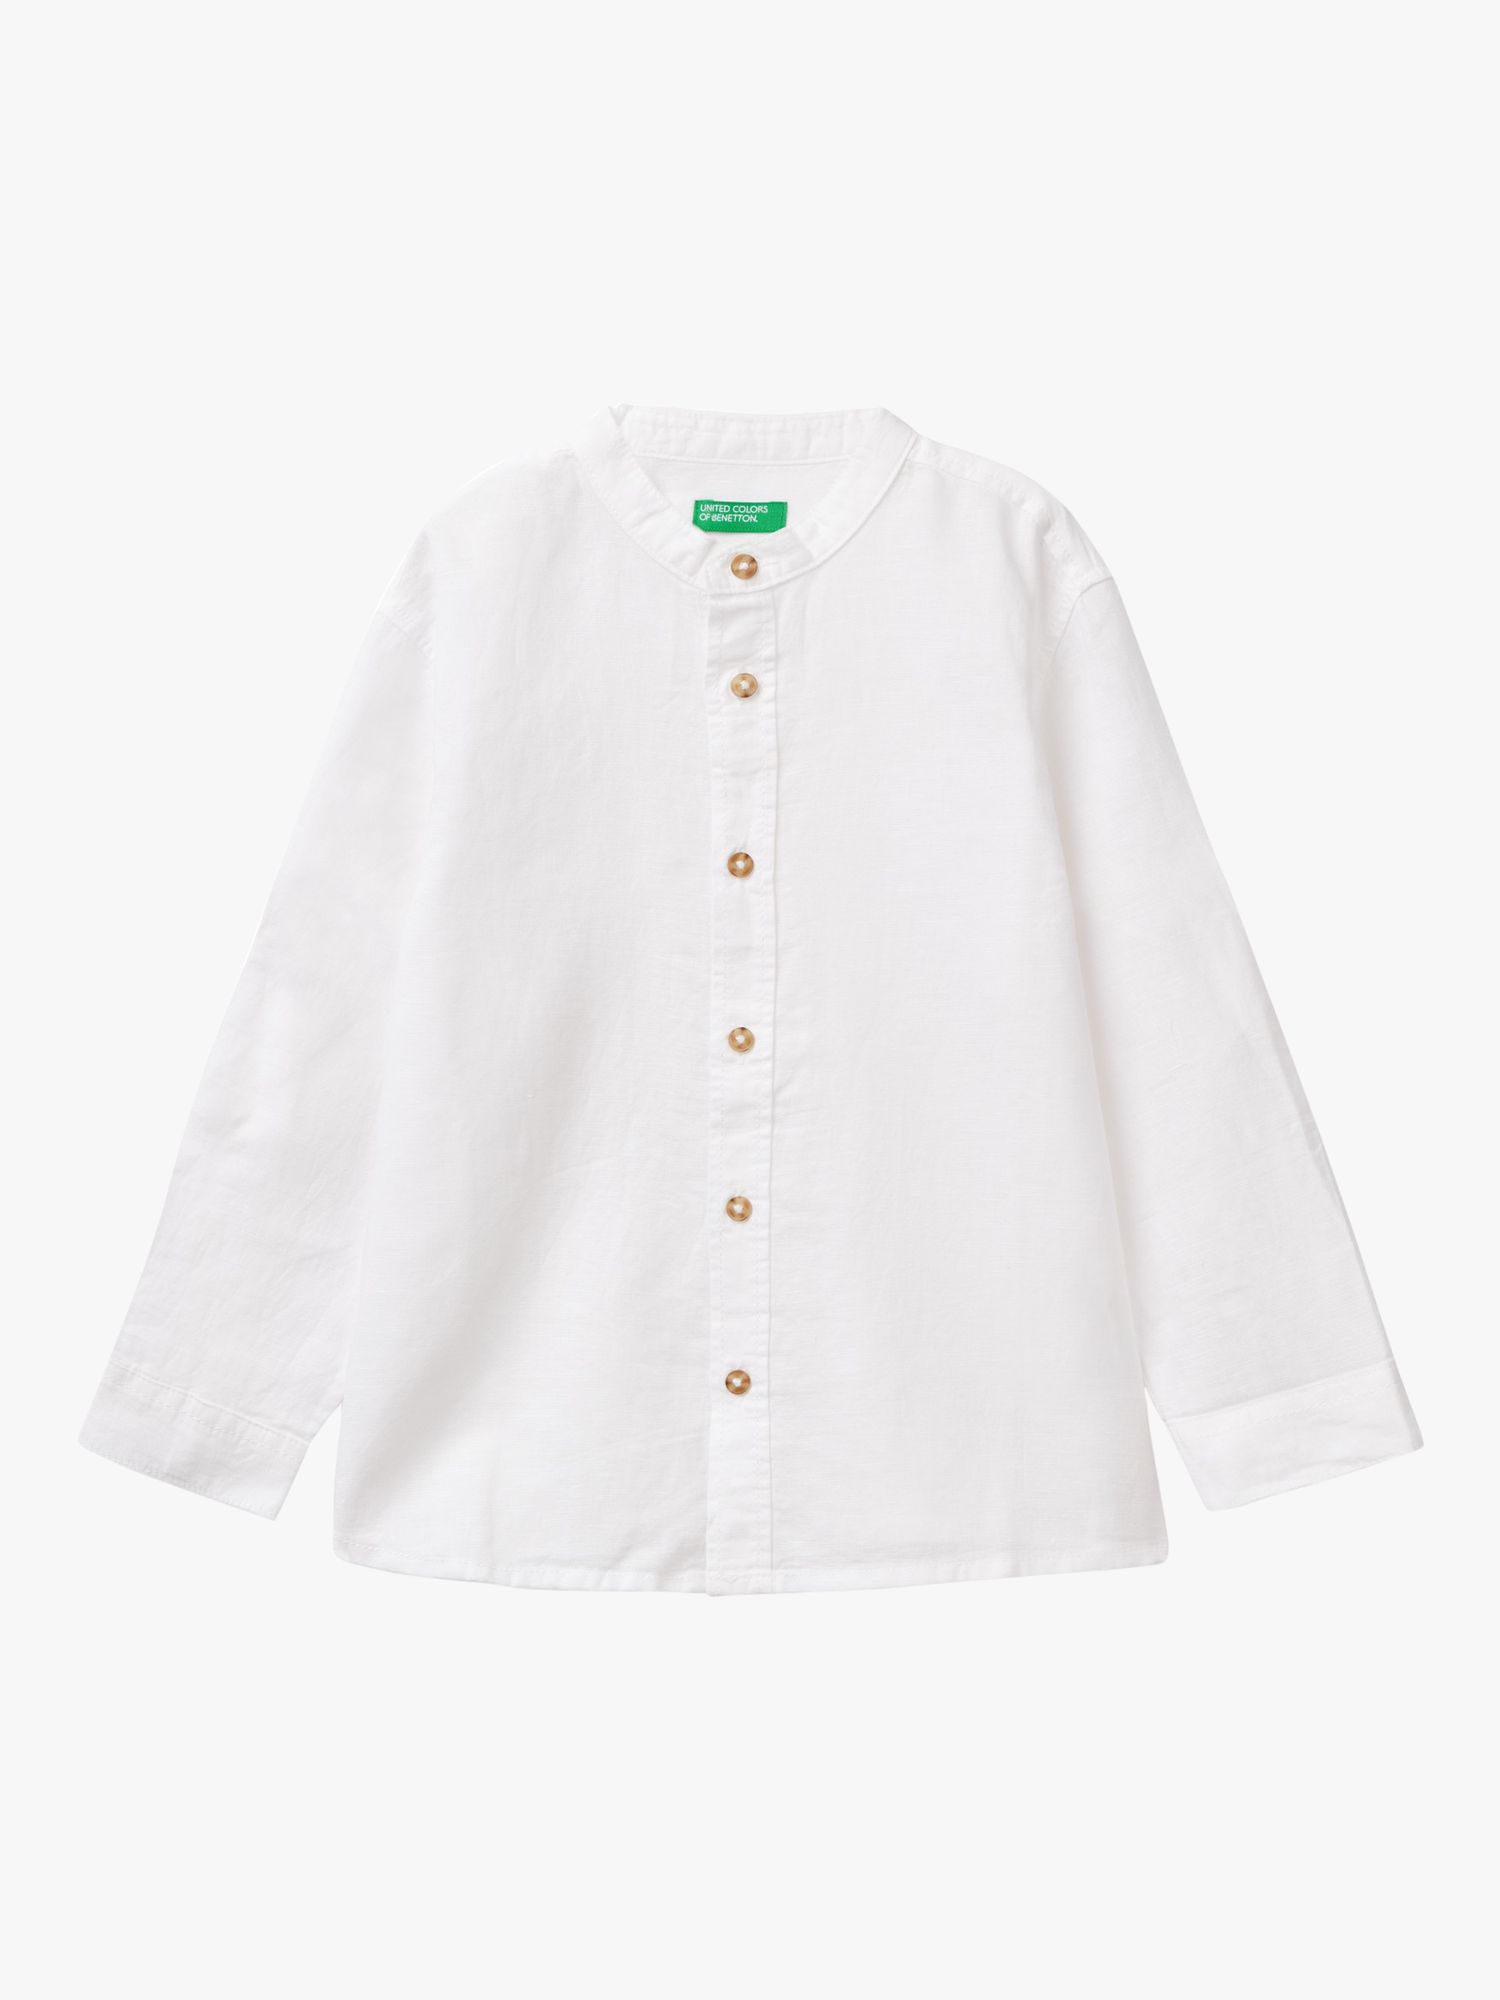 Benetton Kids' Korean Linen Blend Shirt, Optical White, 3-4 years